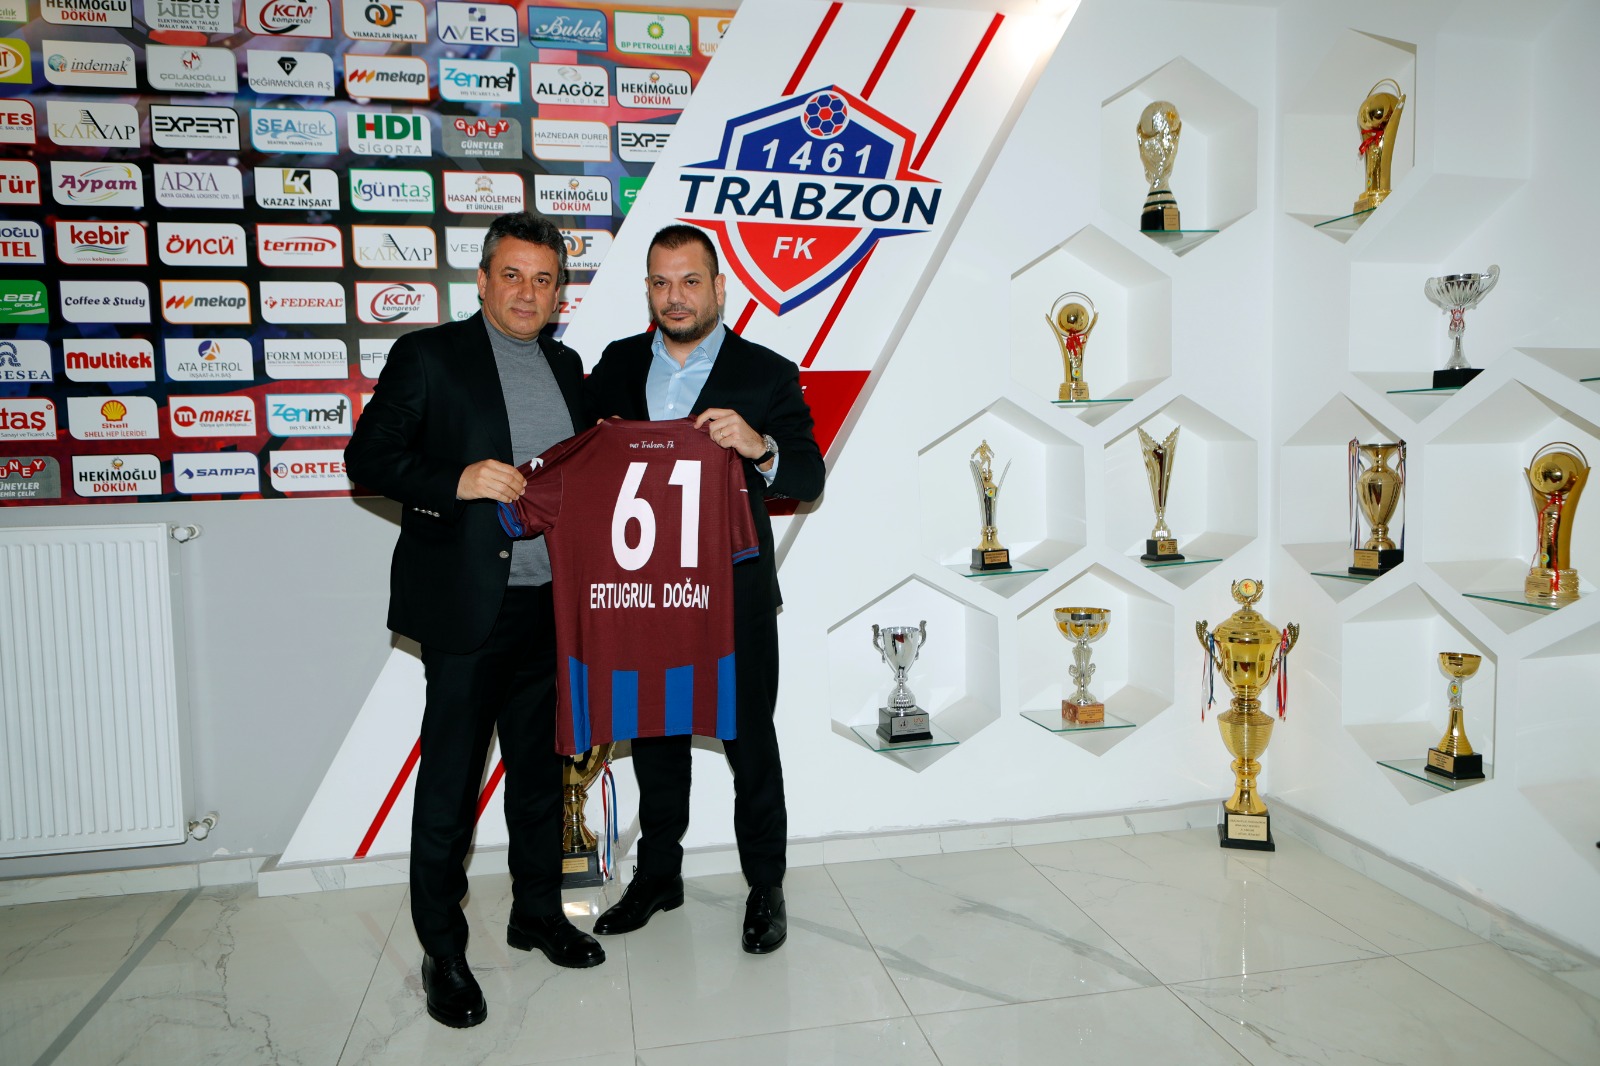 1461 Trabzon (3)